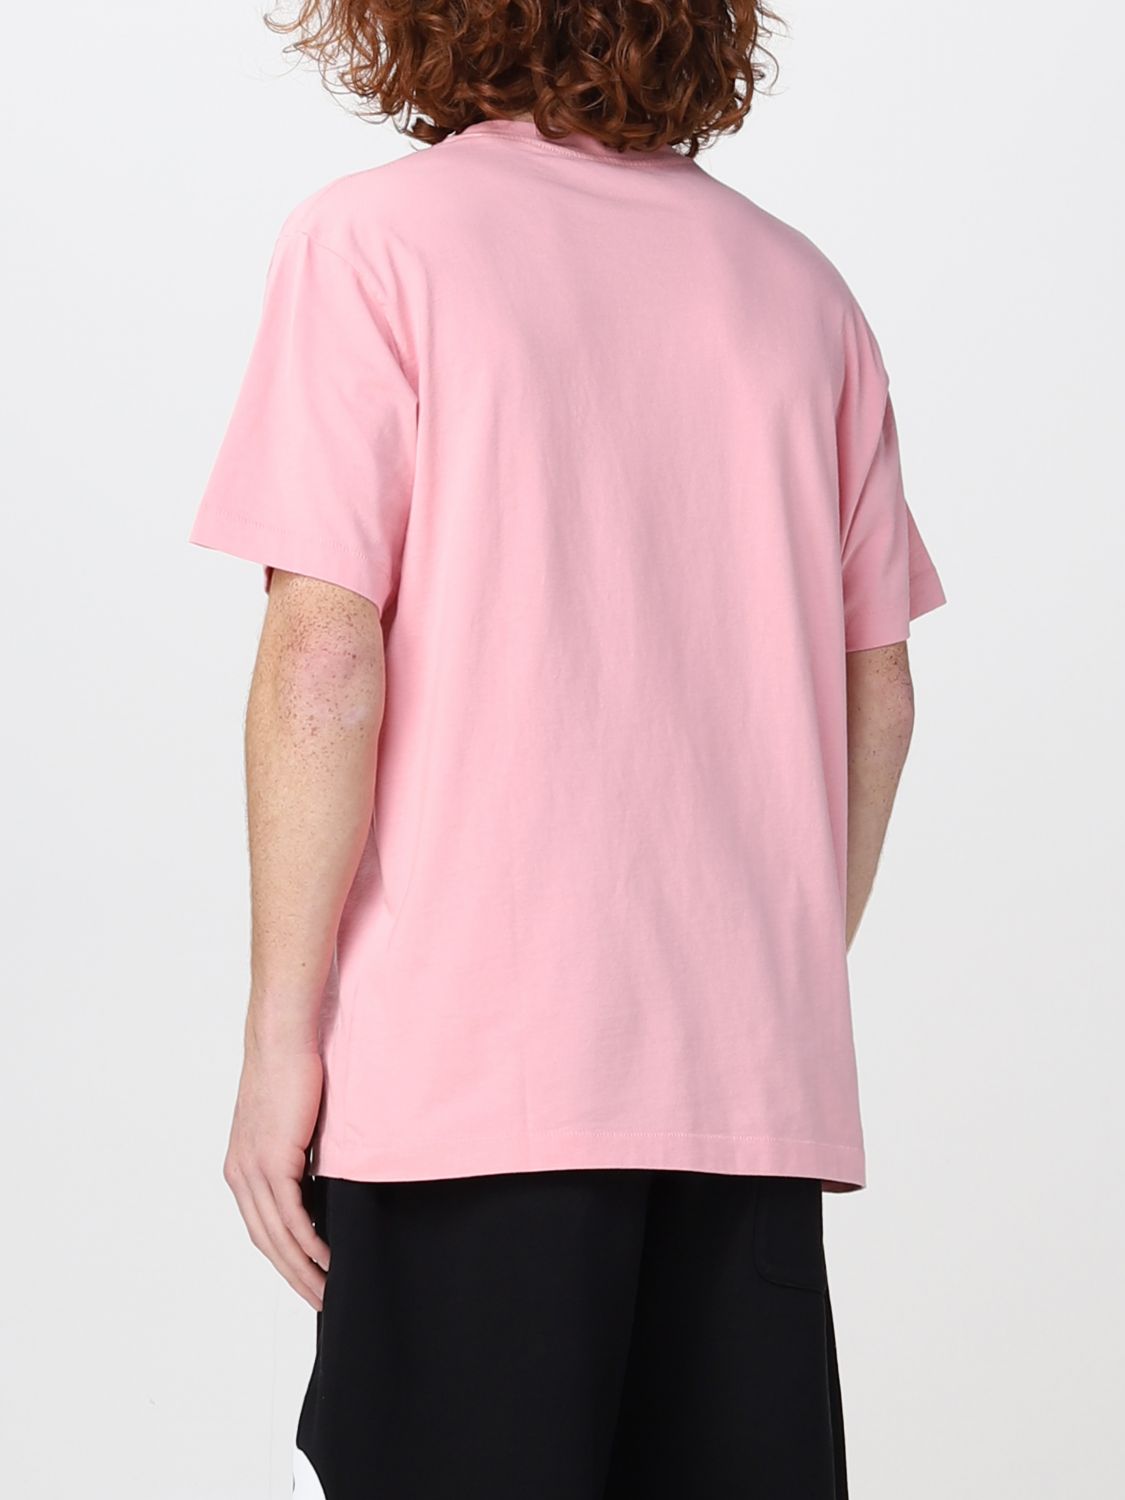 T-shirt Kenzo: T-shirt Boke Flower Kenzo in cotone rosa 3